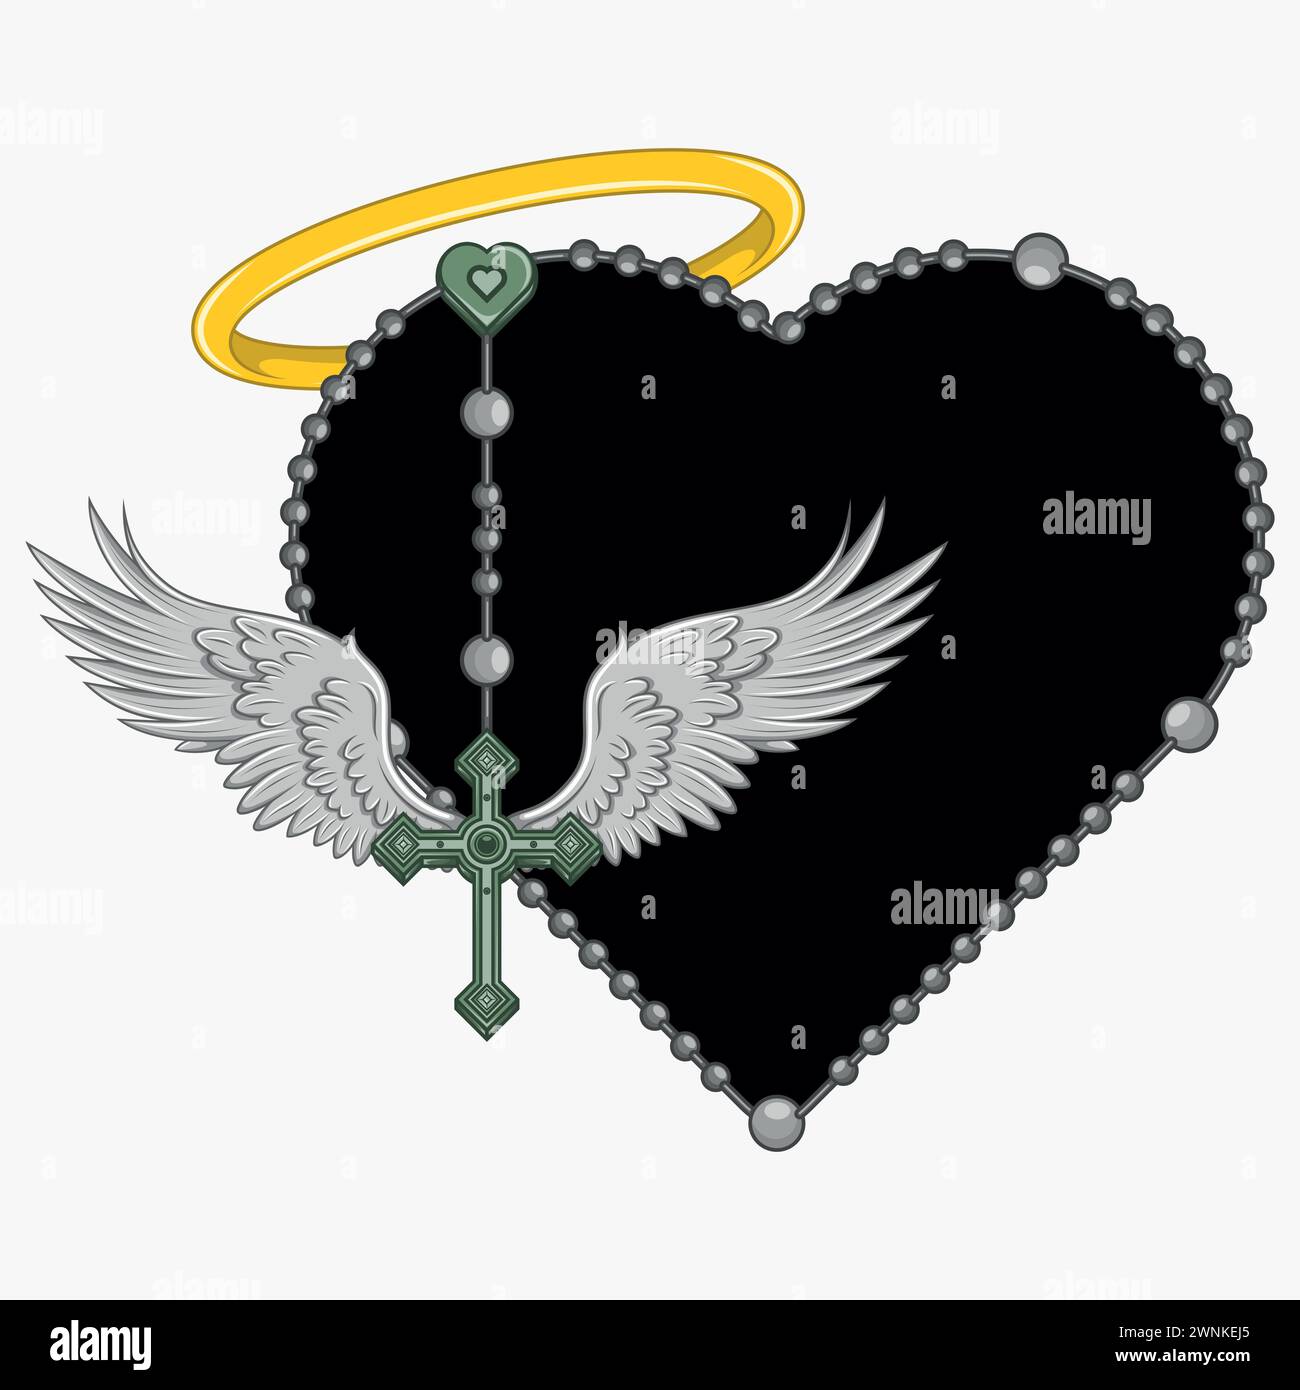 Vektordesign des geflügelten Kreuzes mit herzförmigem Rosenkranz, herzförmigem Rosenkranz mit Flügeln, Symbologie der katholischen Religion Stock Vektor